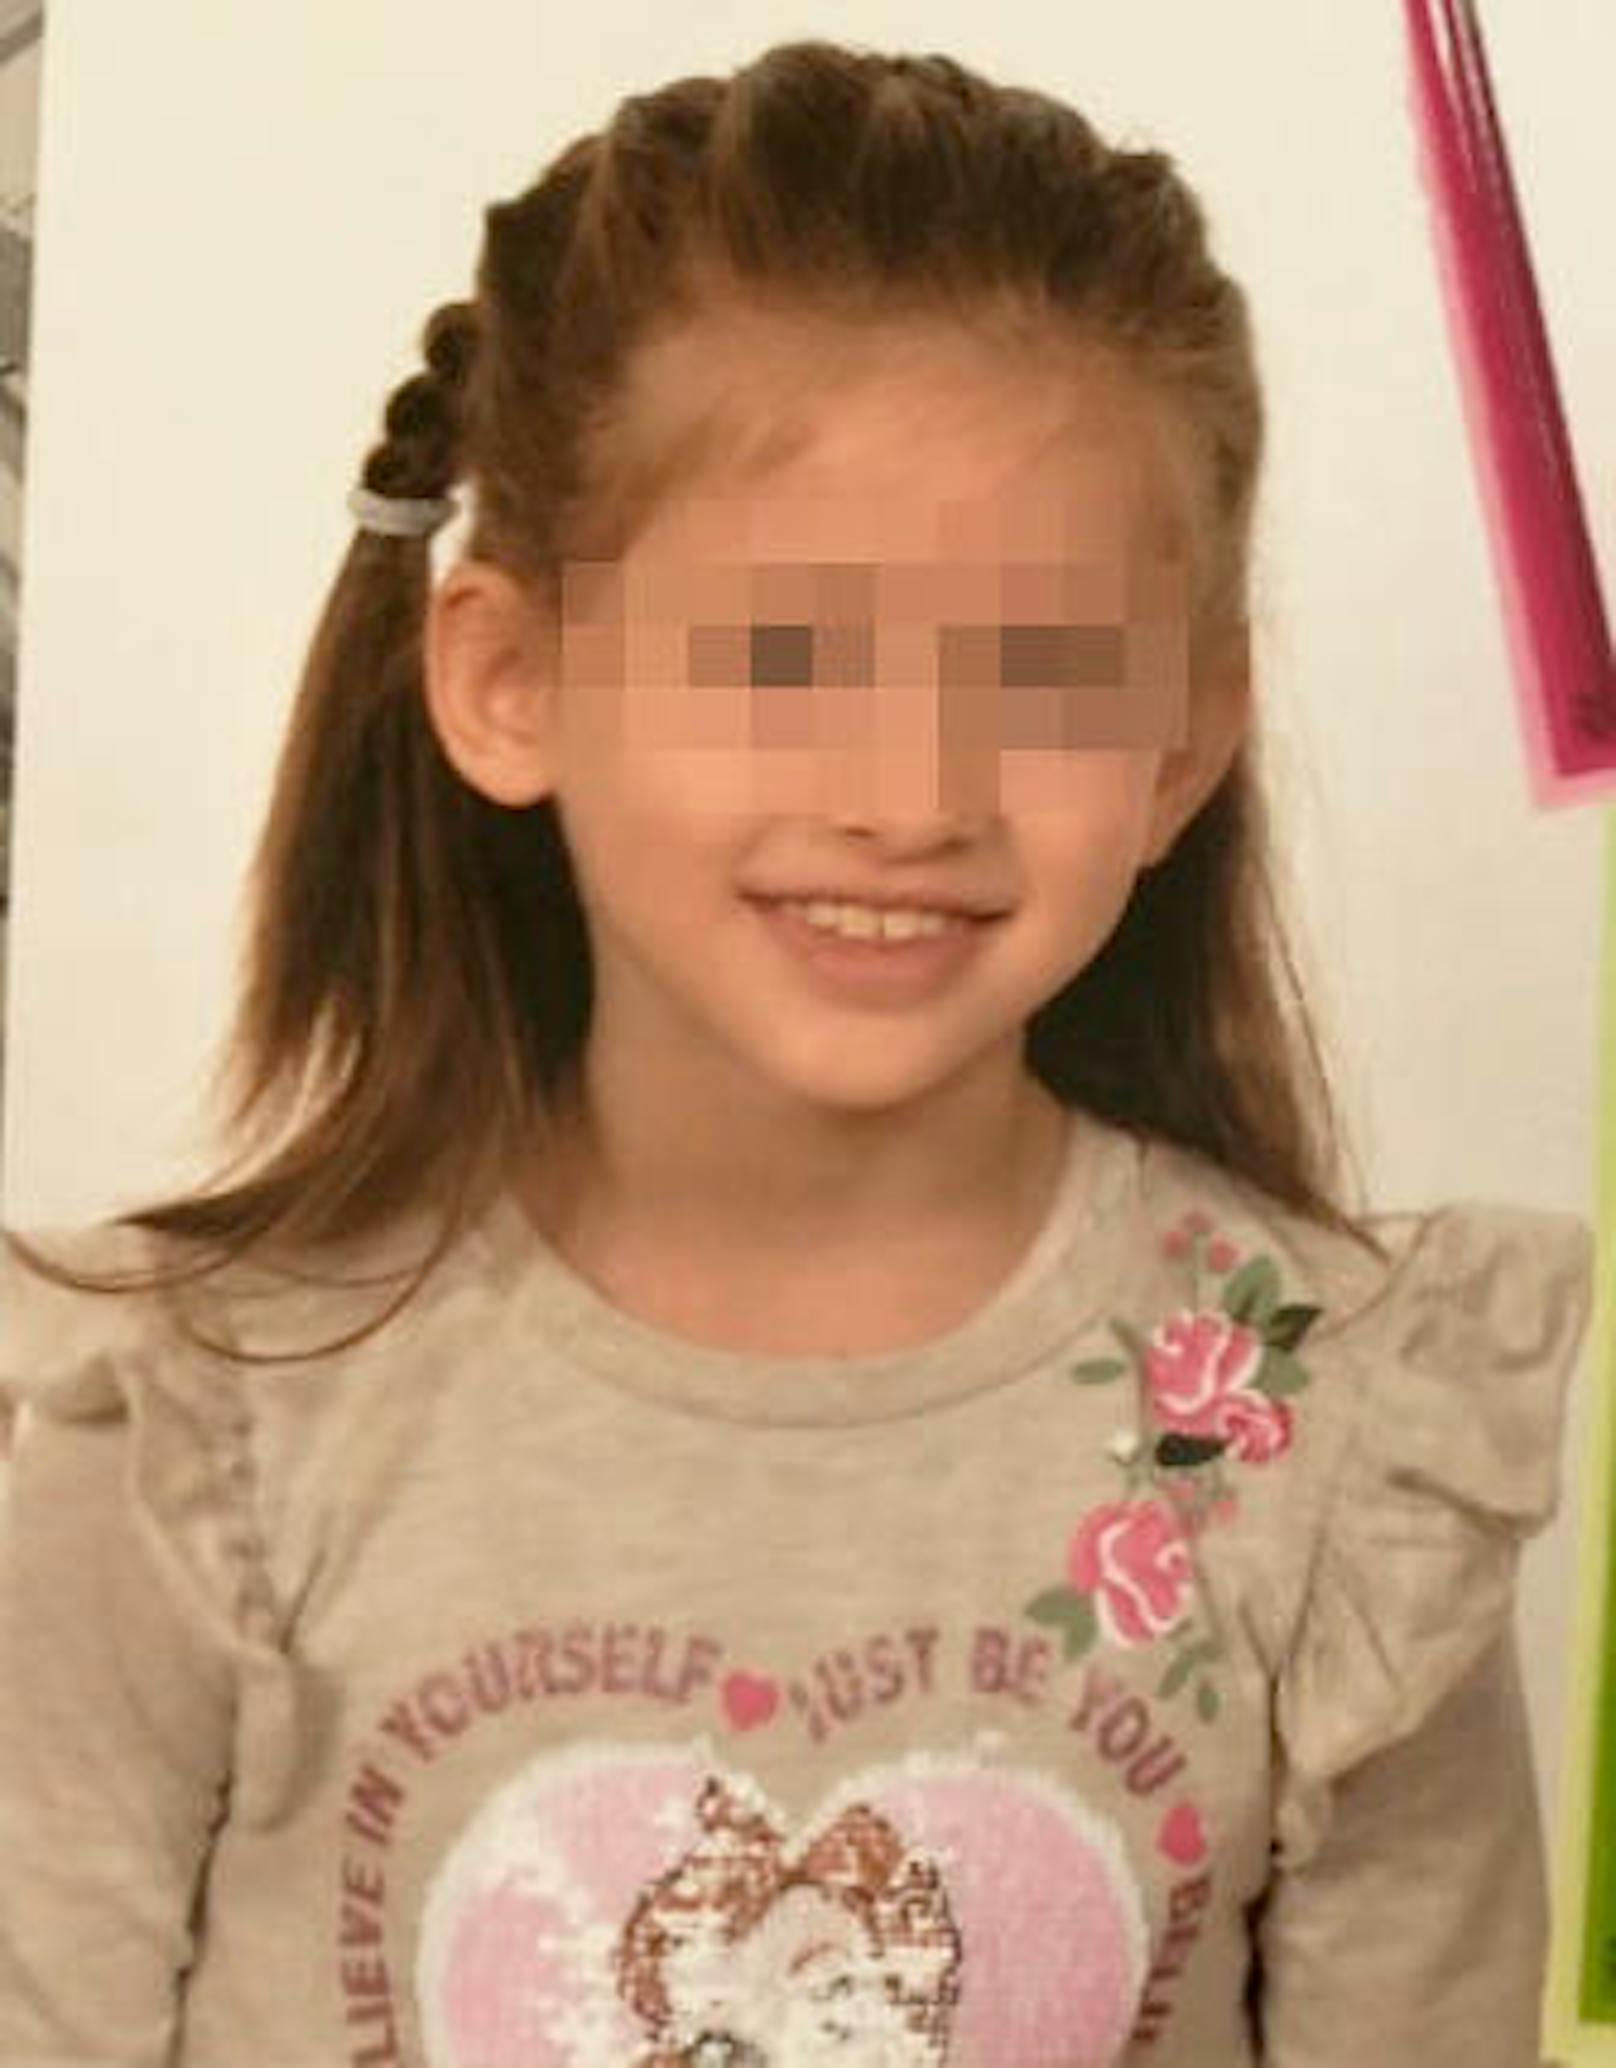 Ihr Tod schockte ganz Wien: Die erst sieben Jahre alte Hadishat wurde am Samstag (12. Mai) getötet. <a href="https://www.heute.at/oesterreich/wien/story/9423270" target="_blank">ermordet aufgefunden >>></a>